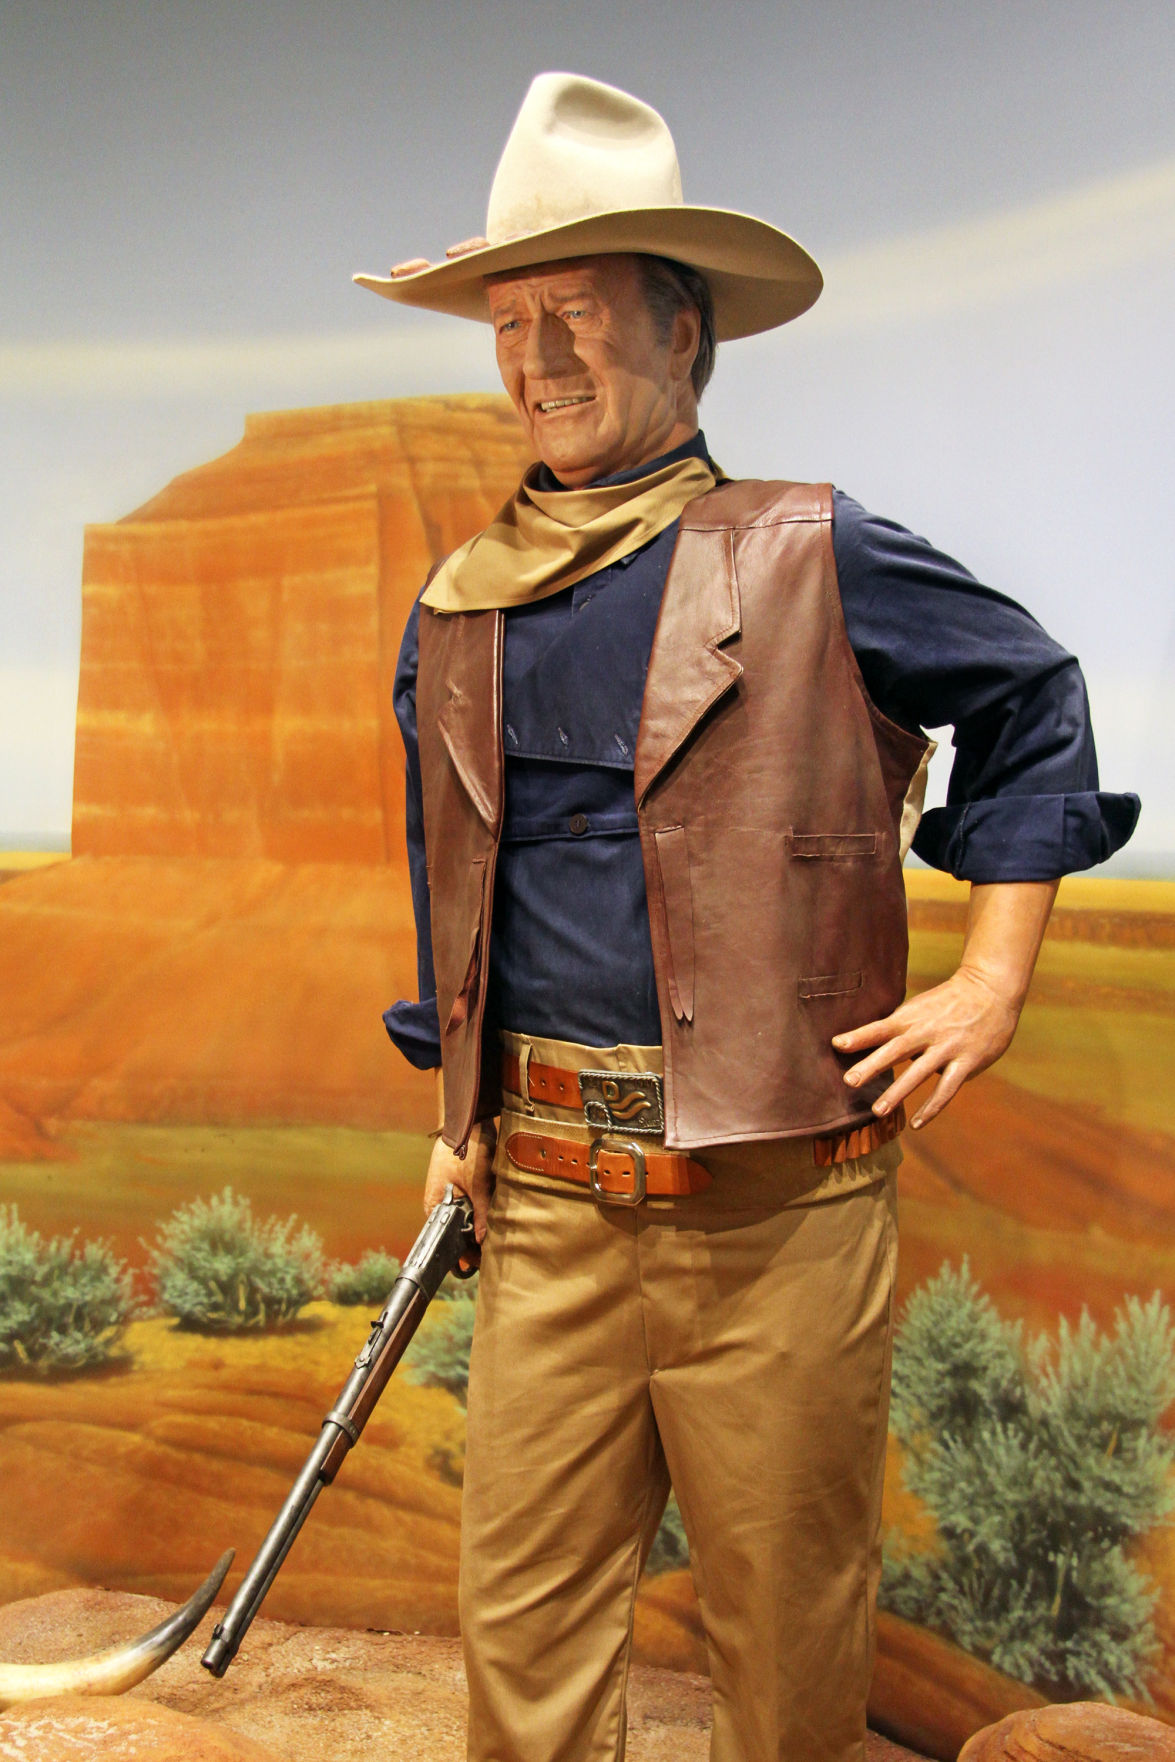 John Wayne museum pays tribute to movies | Special ...
